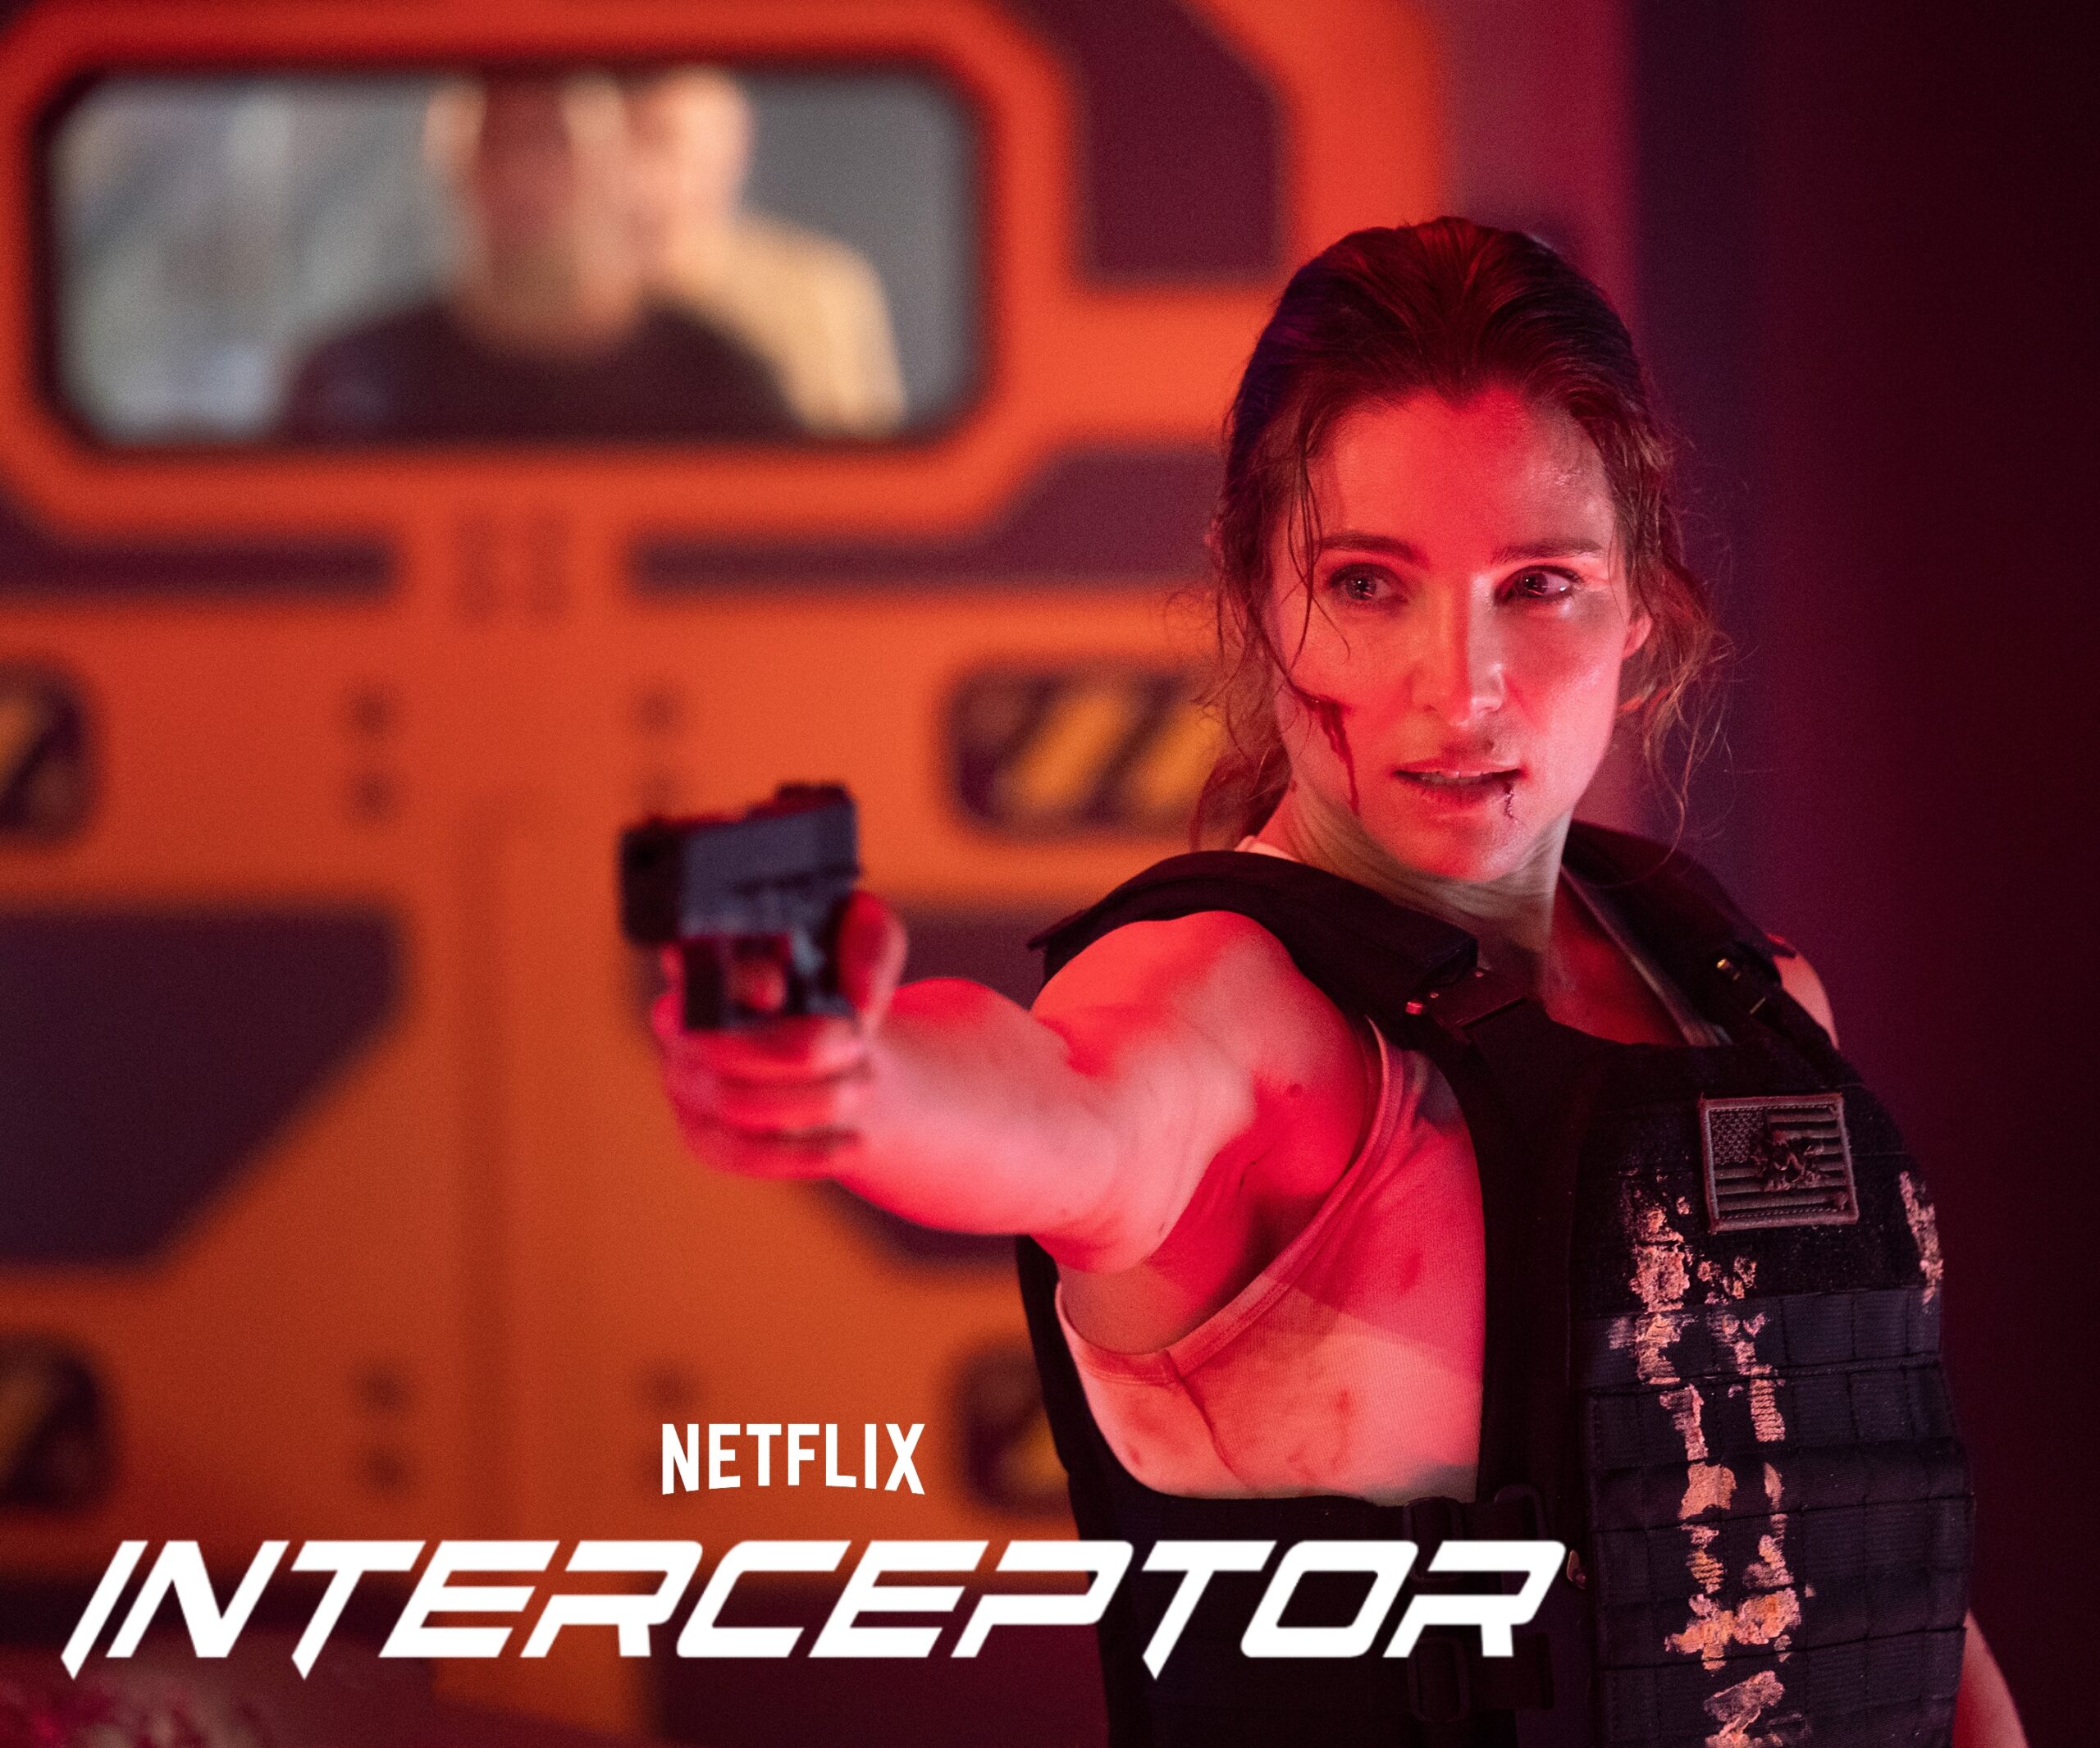 Is “Interceptor” on Netflix